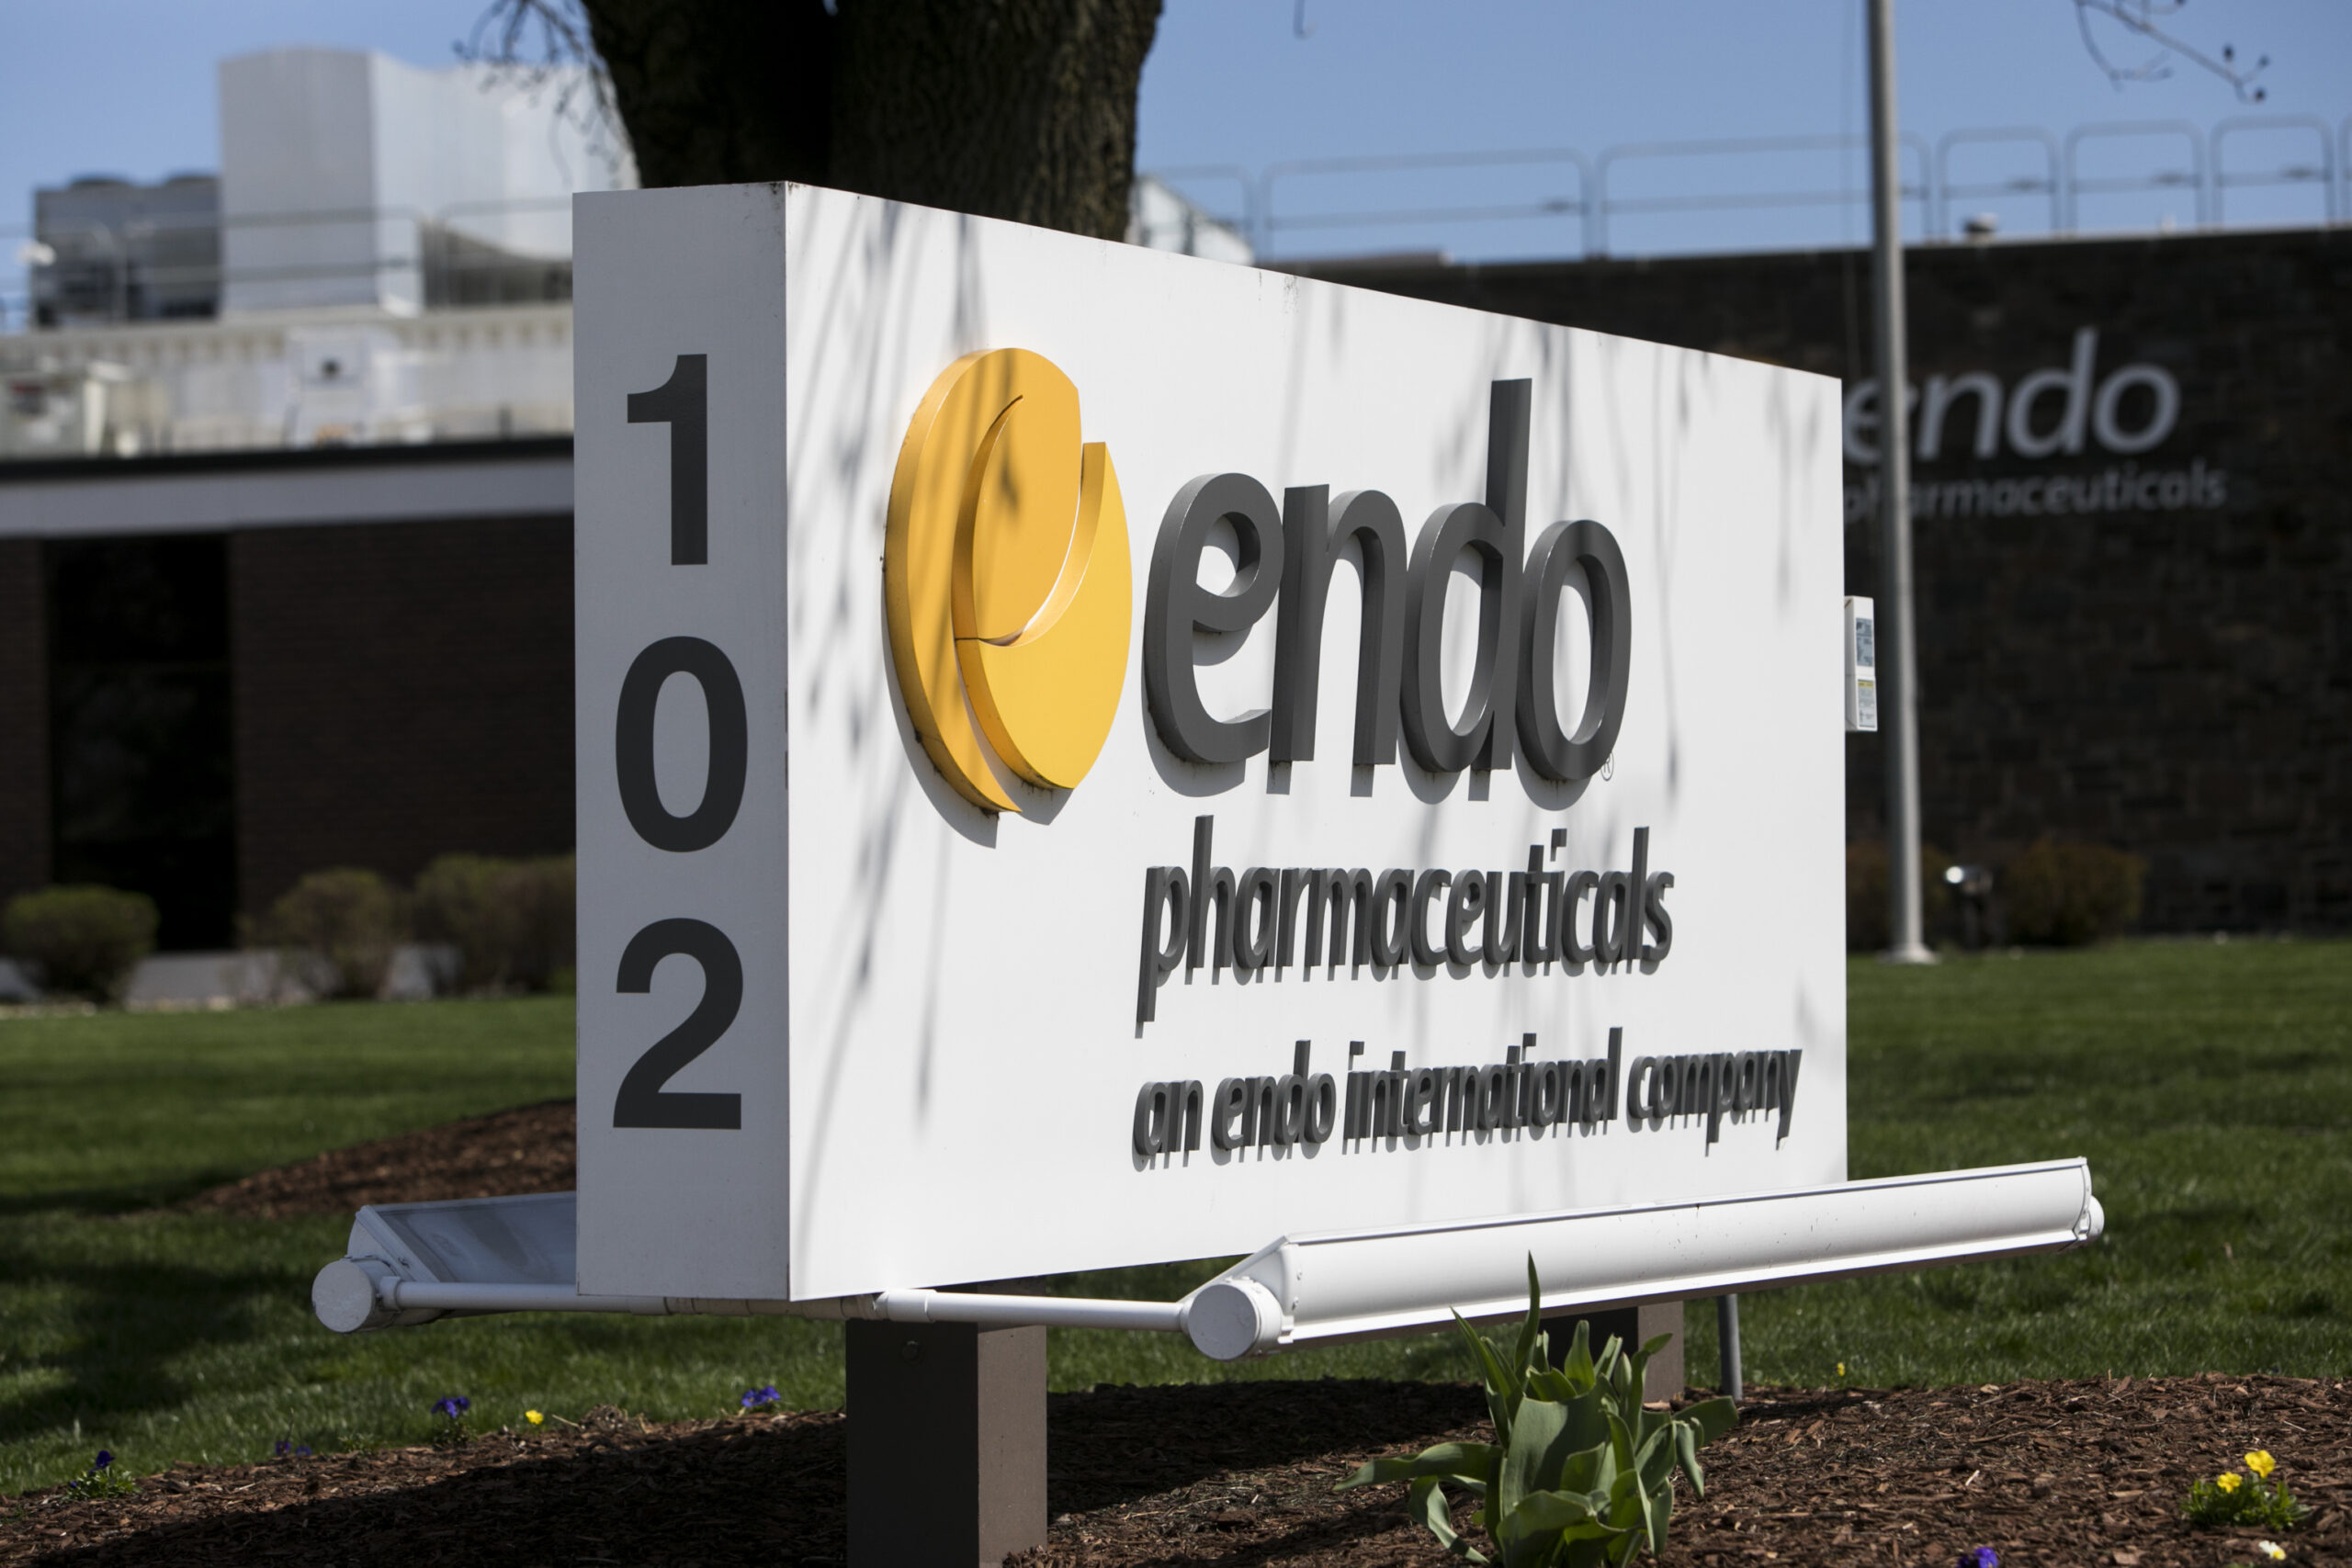 endo pharmaceuticals pennsylvania